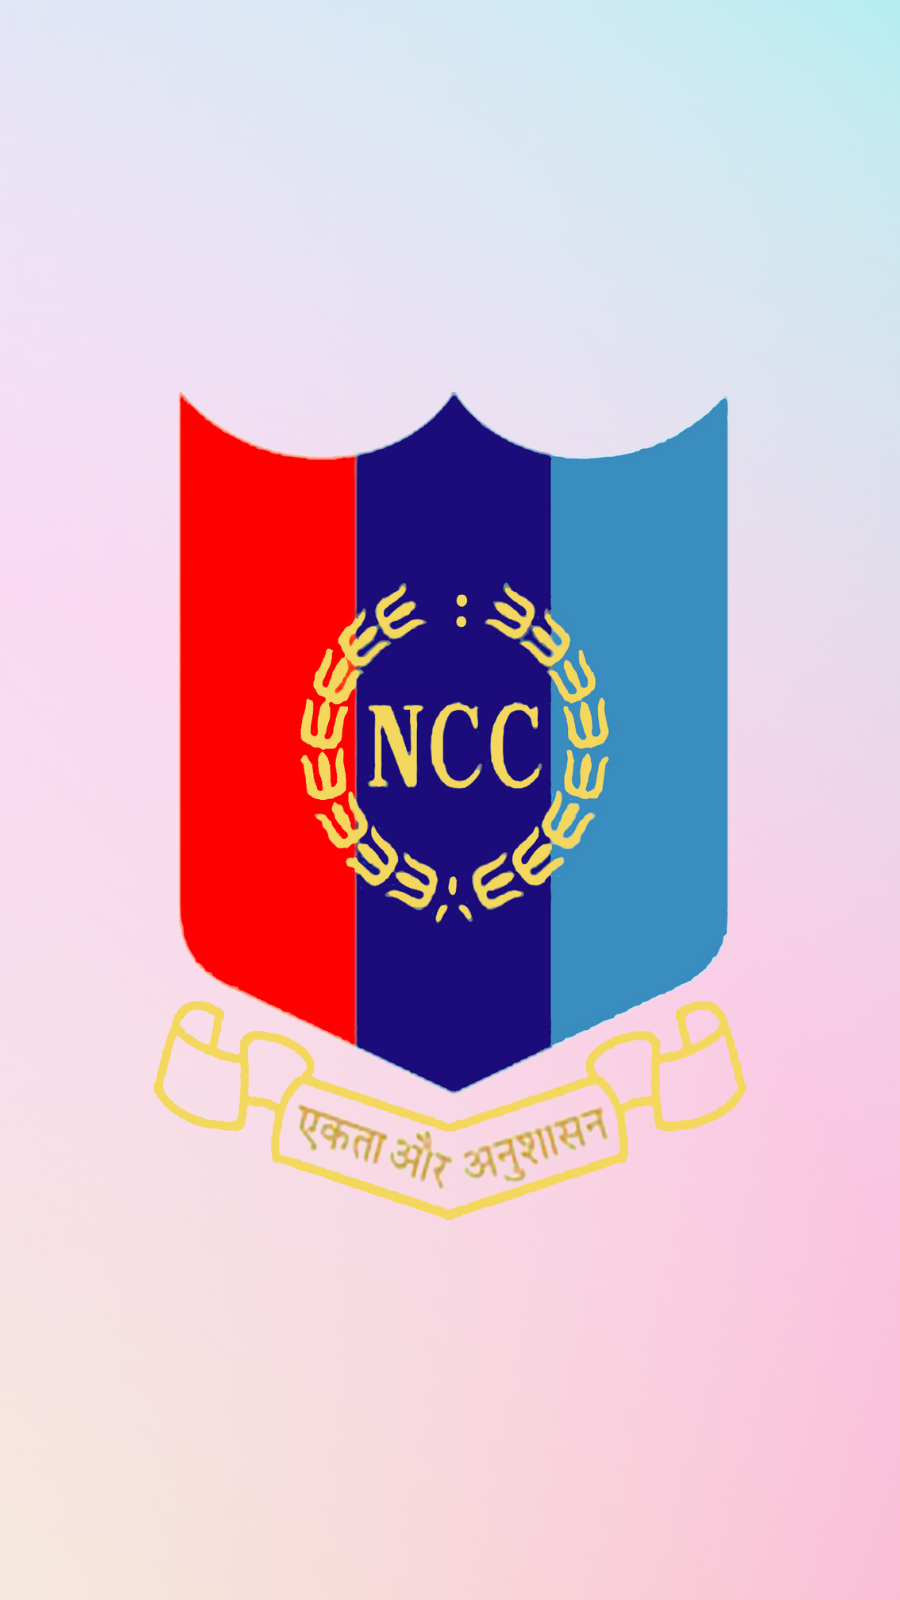 Newcastle-University-logo - NCC Education